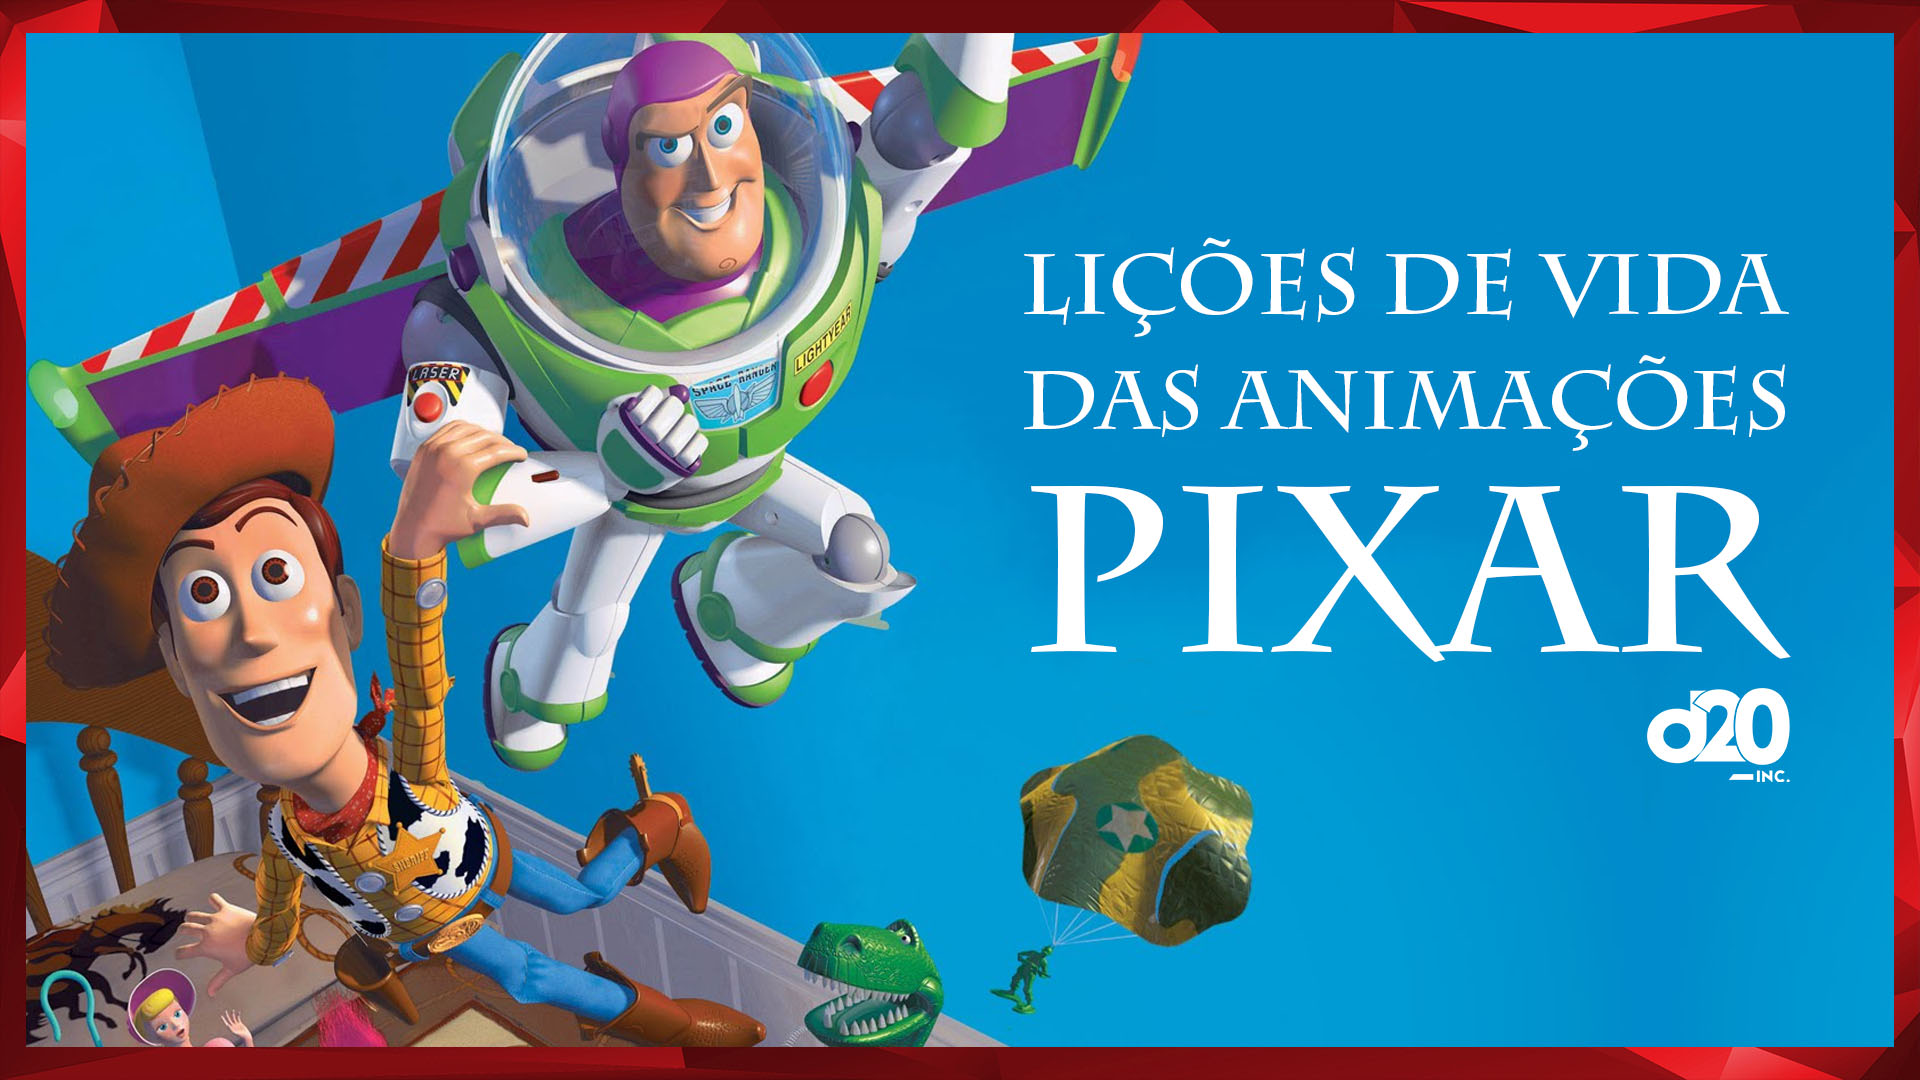 Pixar e Suas Lições de Vida | D20 Lab 63